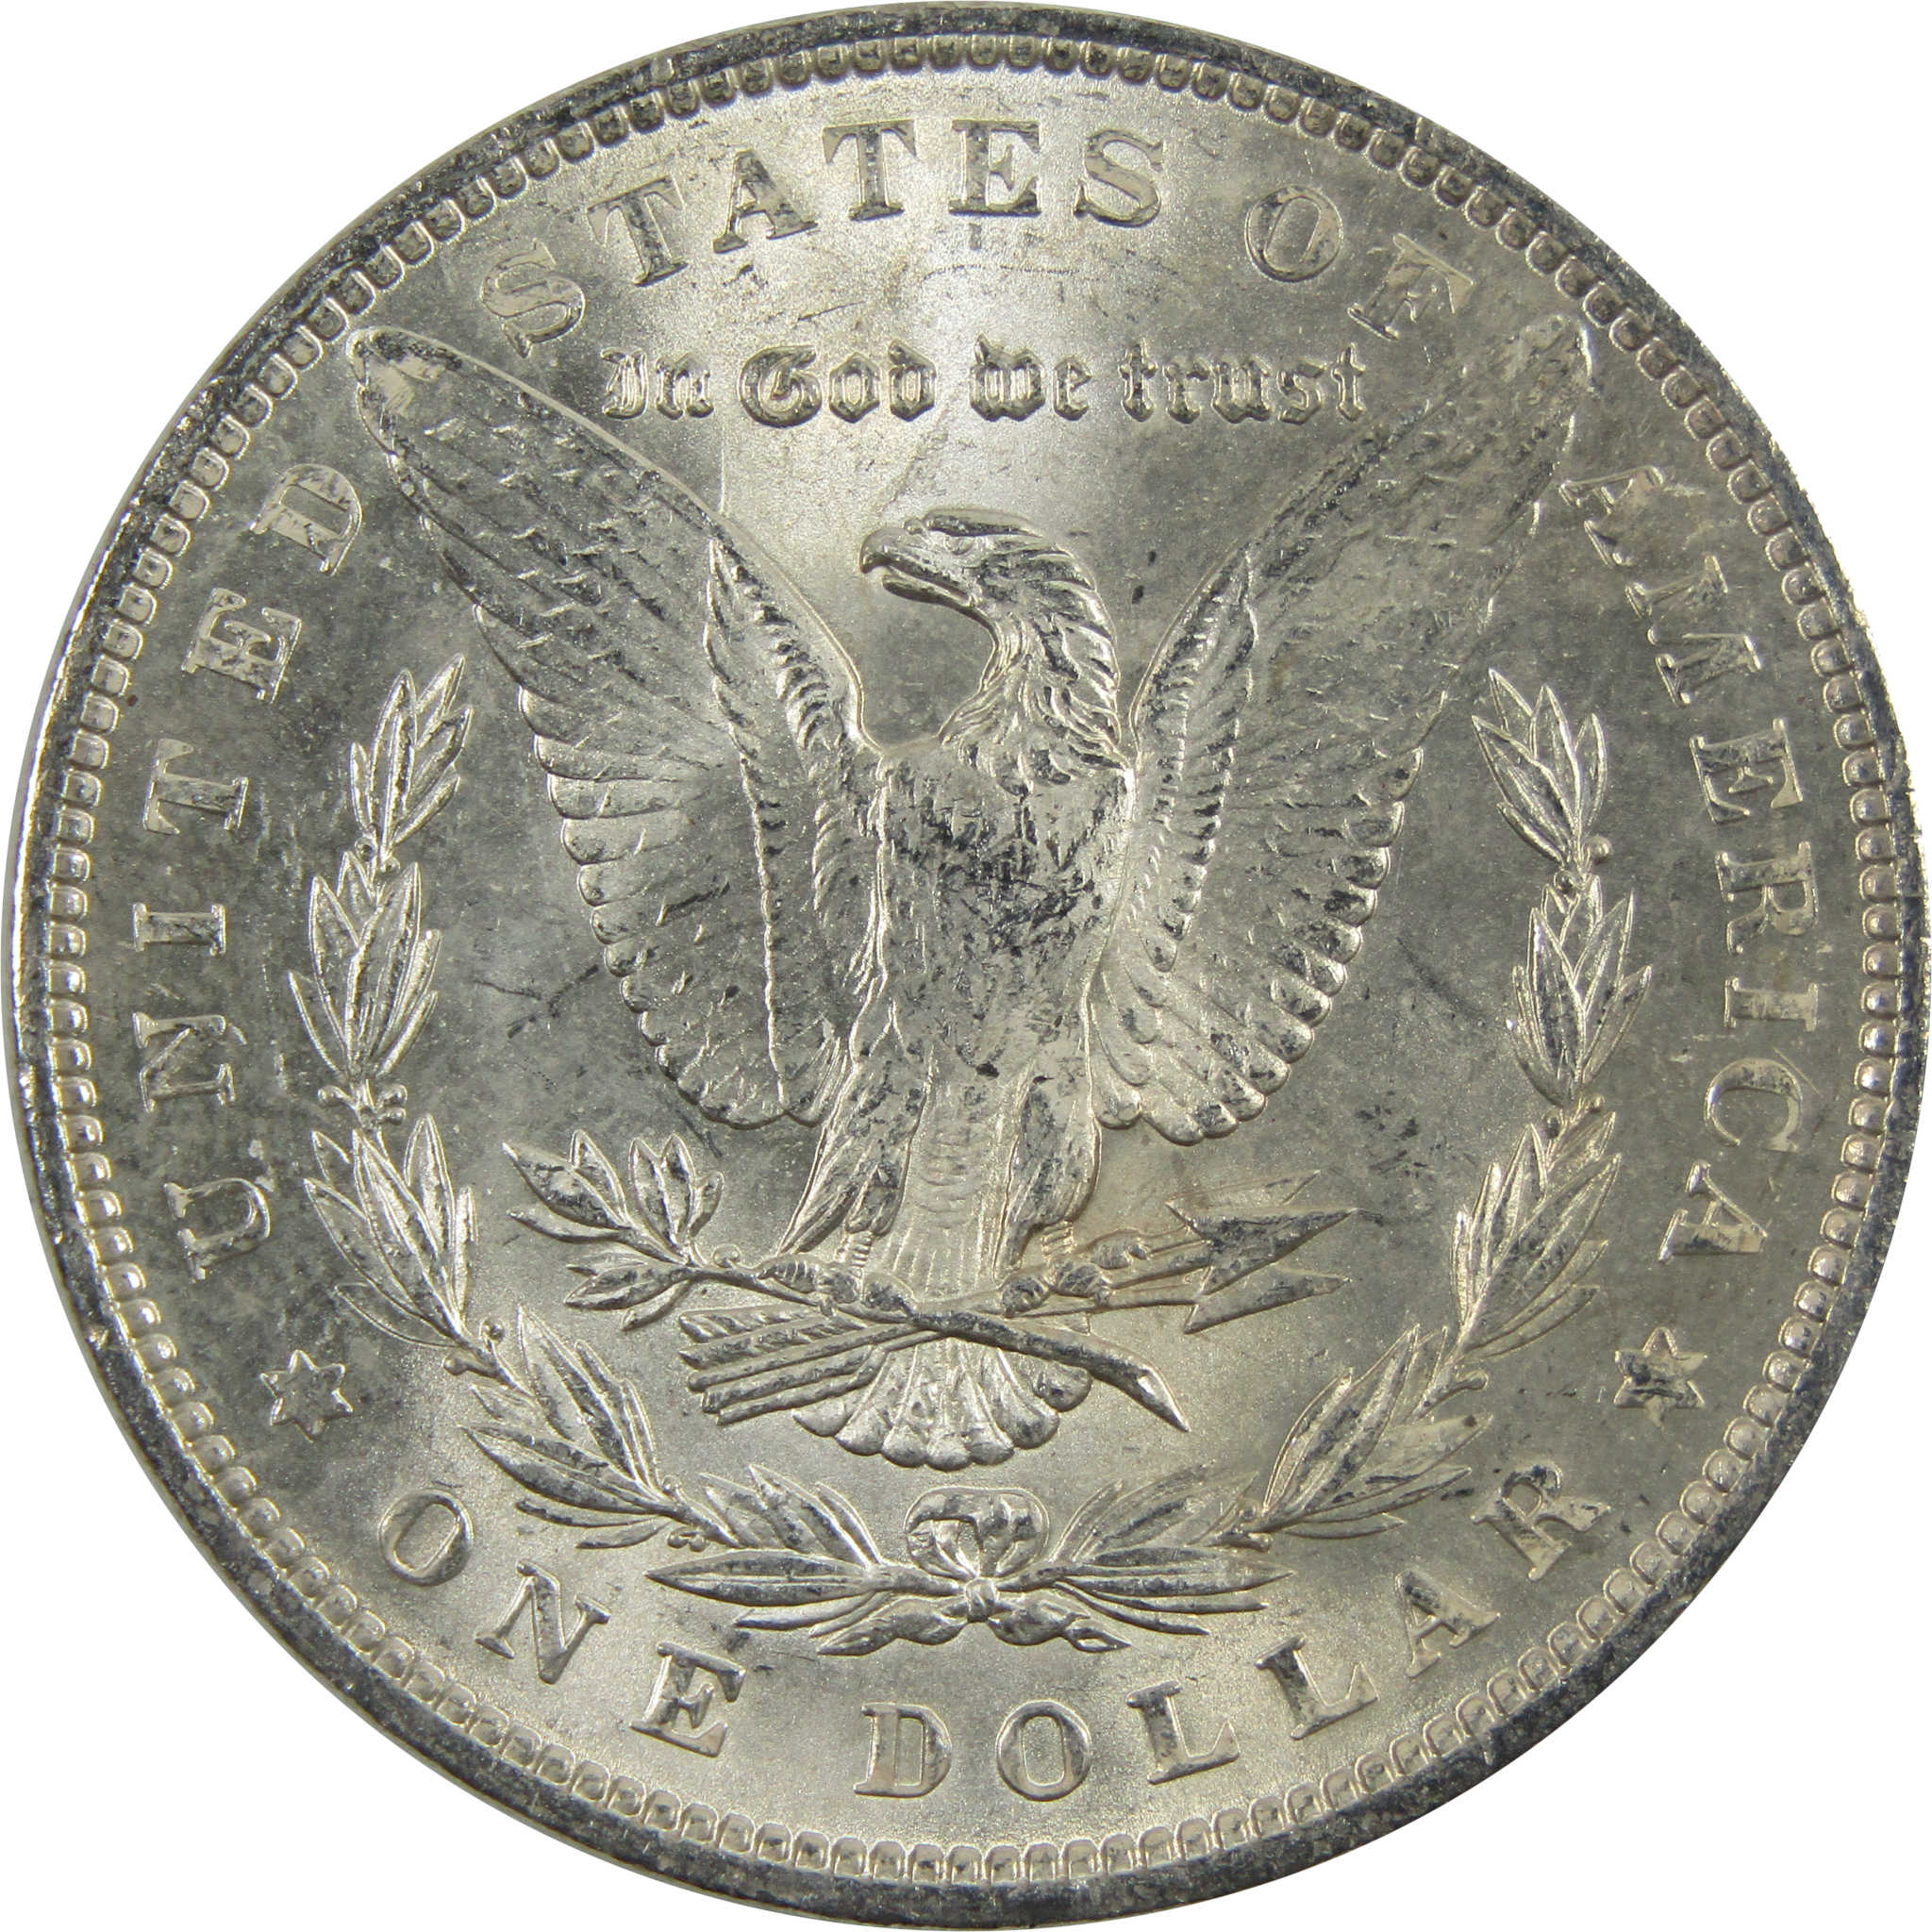 1890 Morgan Dollar BU Uncirculated 90% Silver $1 Coin SKU:I5132 - Morgan coin - Morgan silver dollar - Morgan silver dollar for sale - Profile Coins &amp; Collectibles